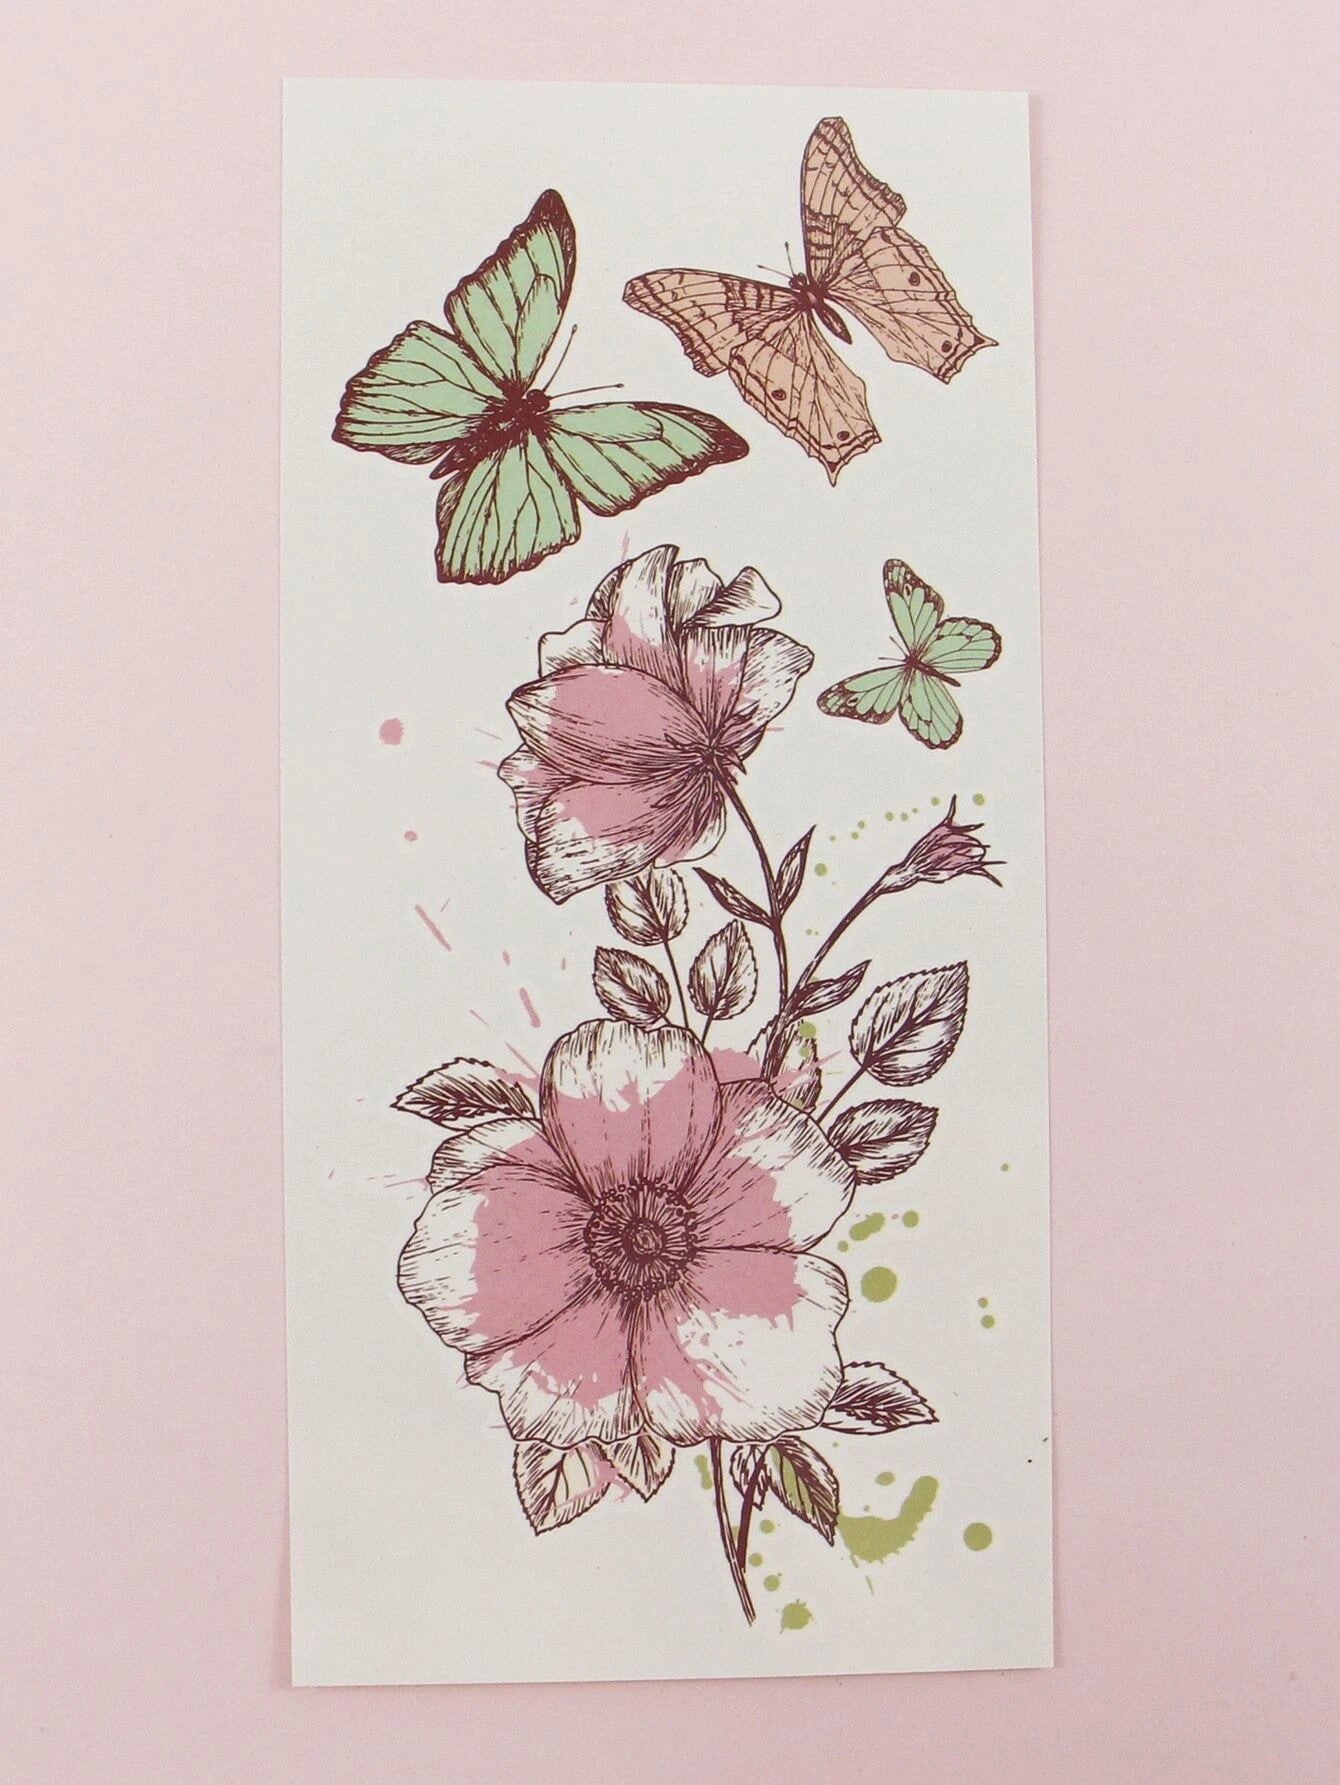 Flower Pattern Tattoo